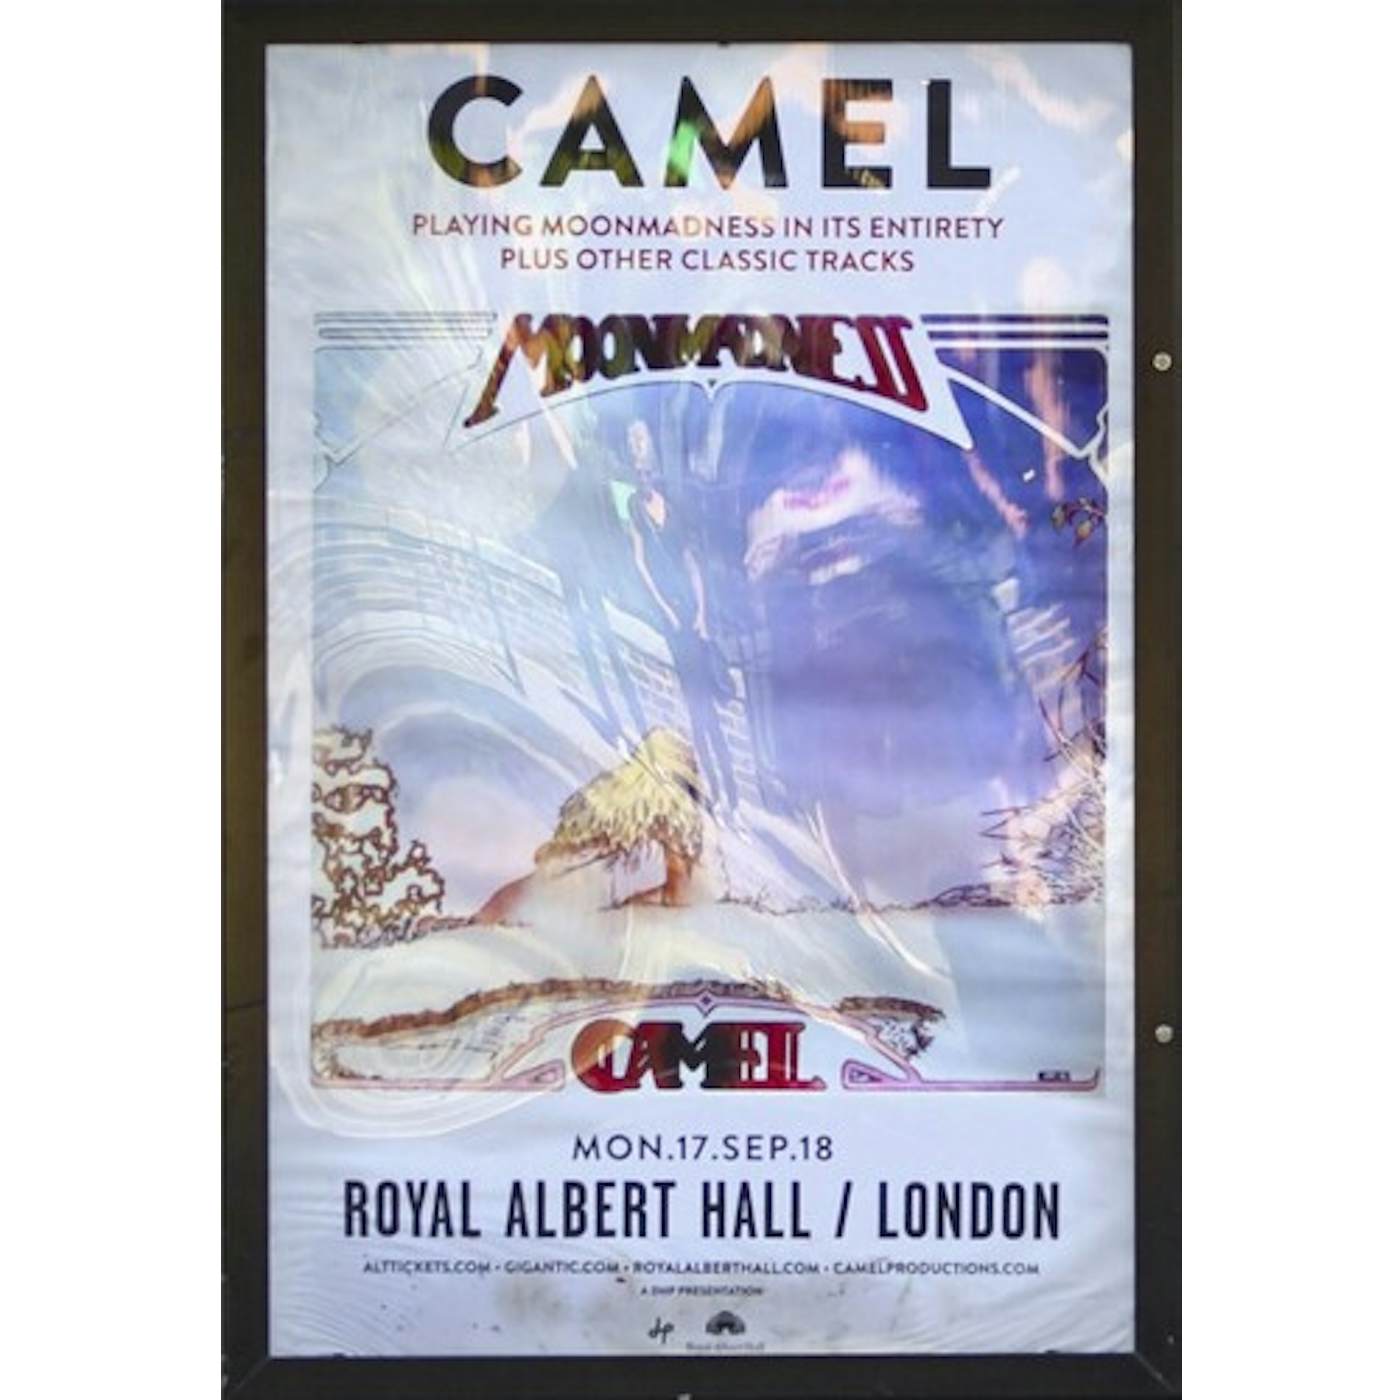 CAMEL AT THE ROYAL ALBERT HALL CD